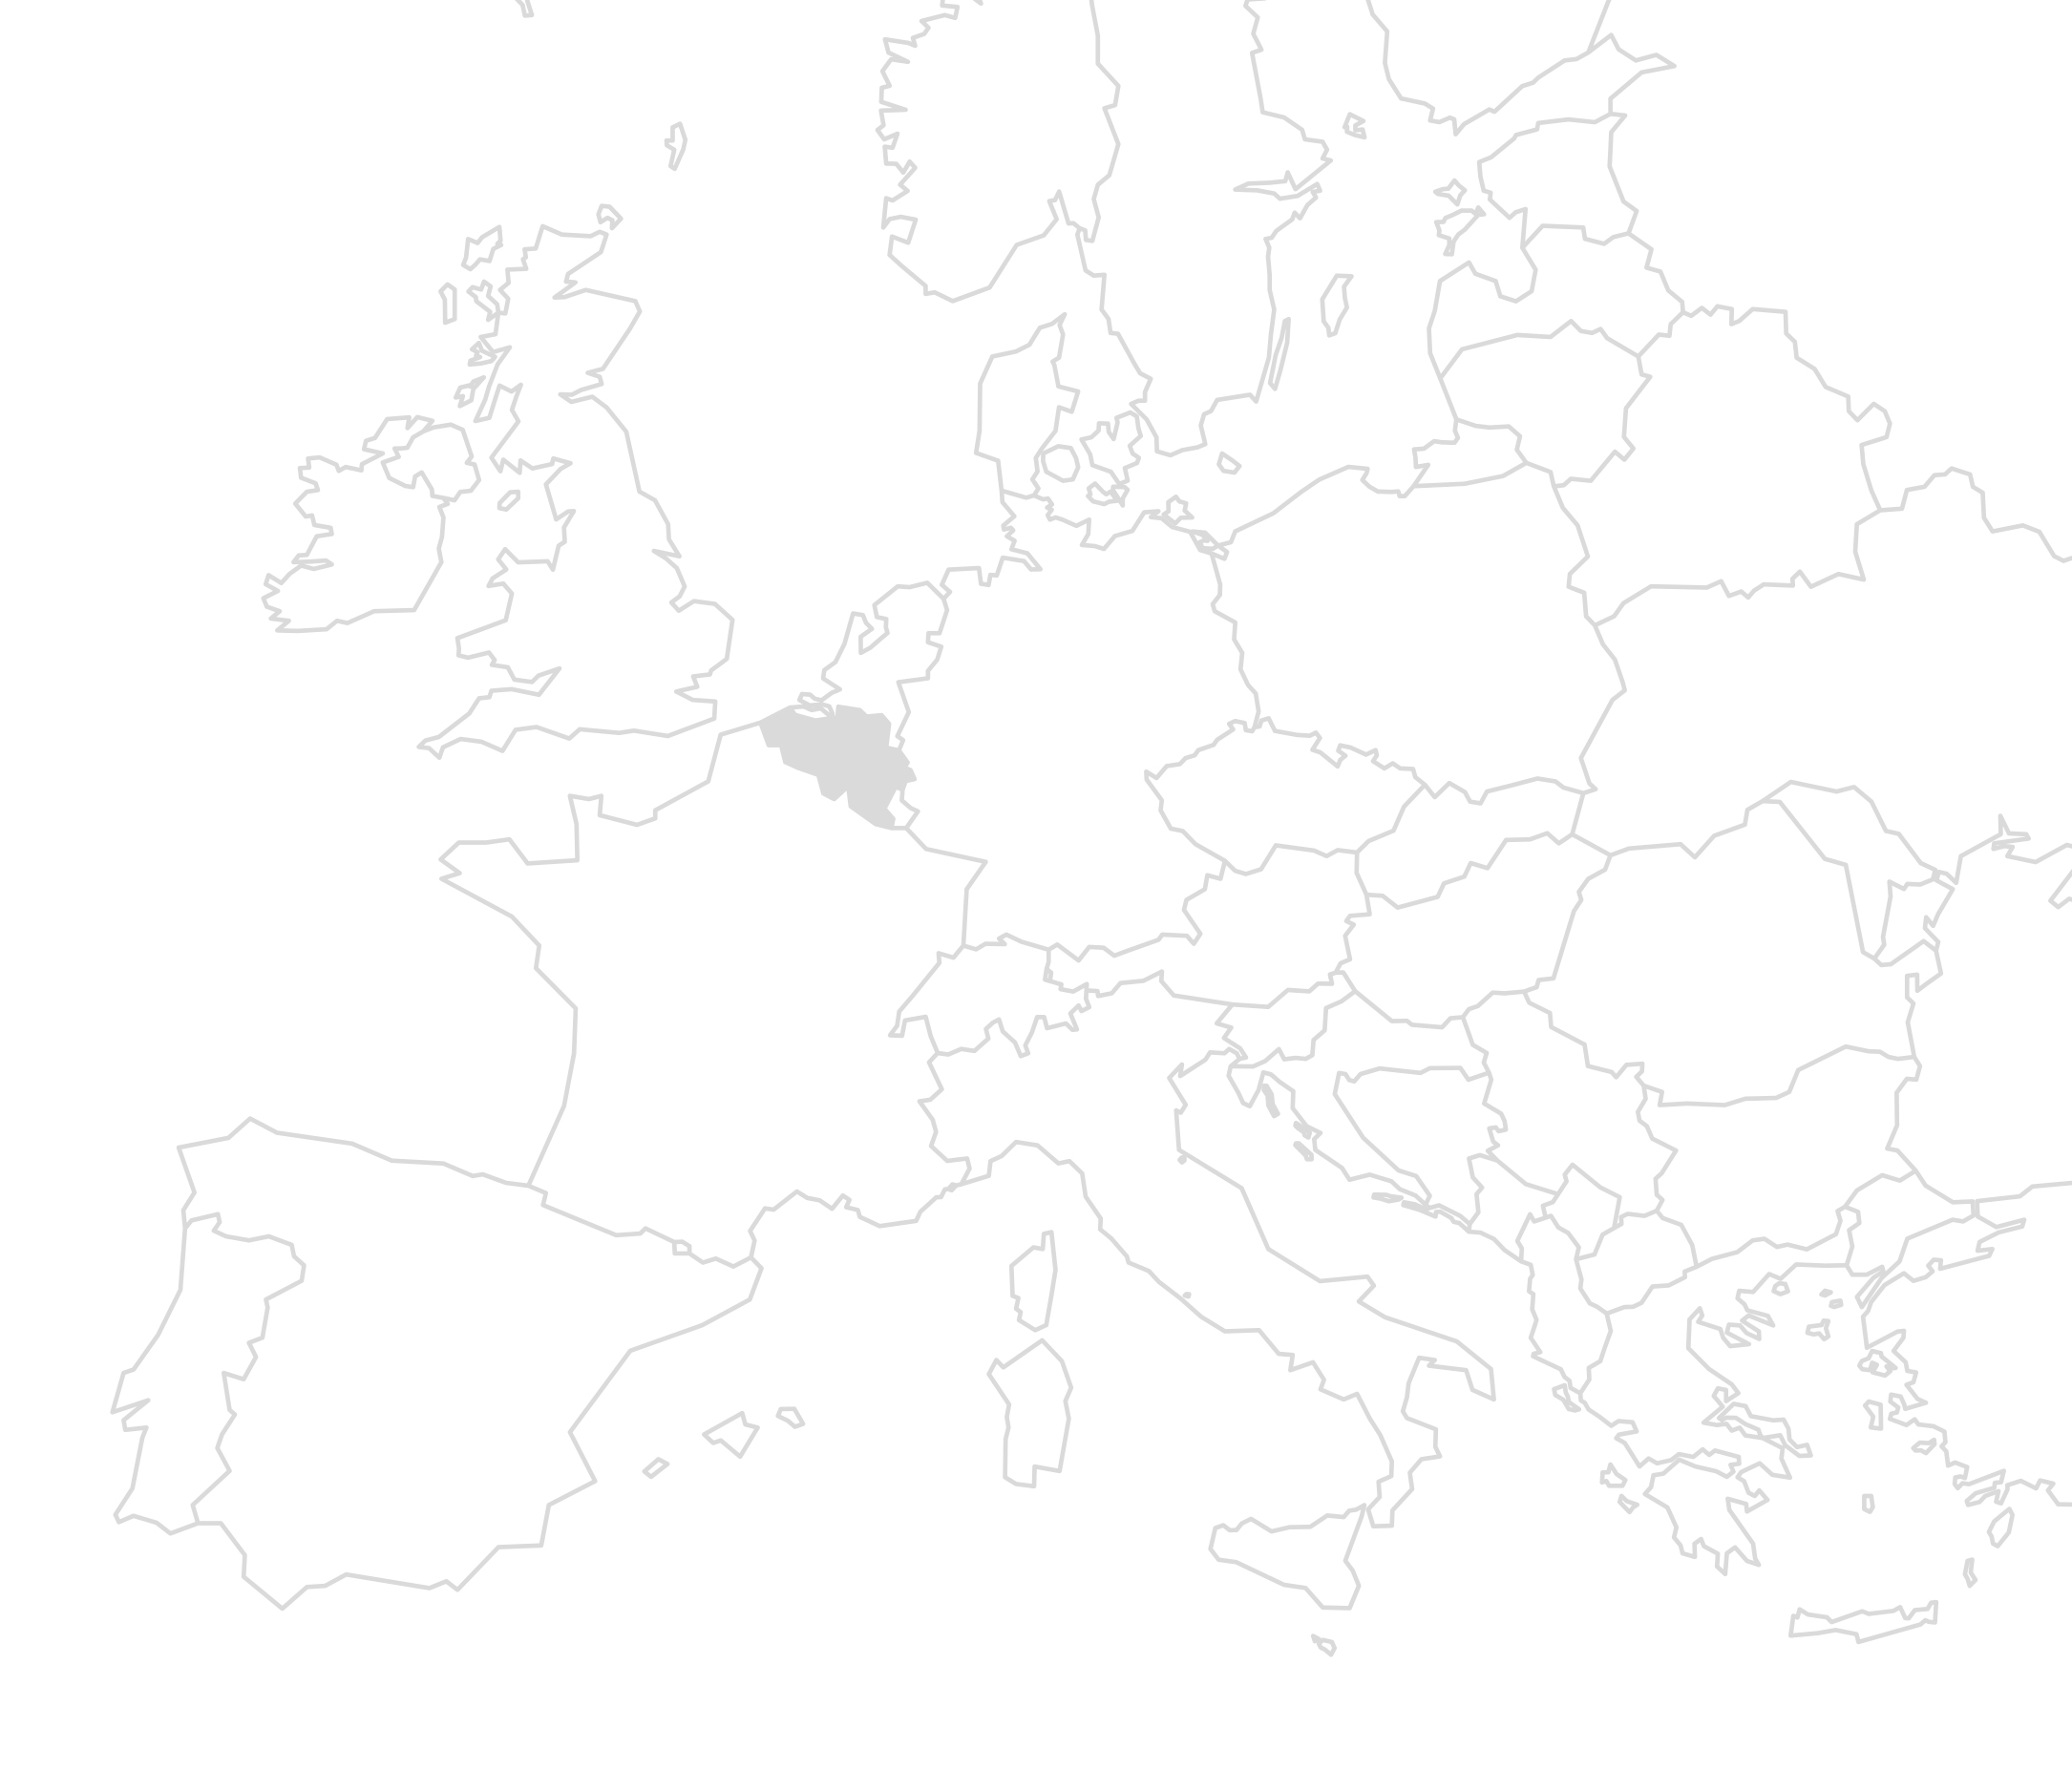 Eine weiß-graue Europakarte mit Einzeichnung der Länder in denen Belgien grau gefüllt ist. Die Karte soll den Standort des Bauprojekts verdeutlichen.